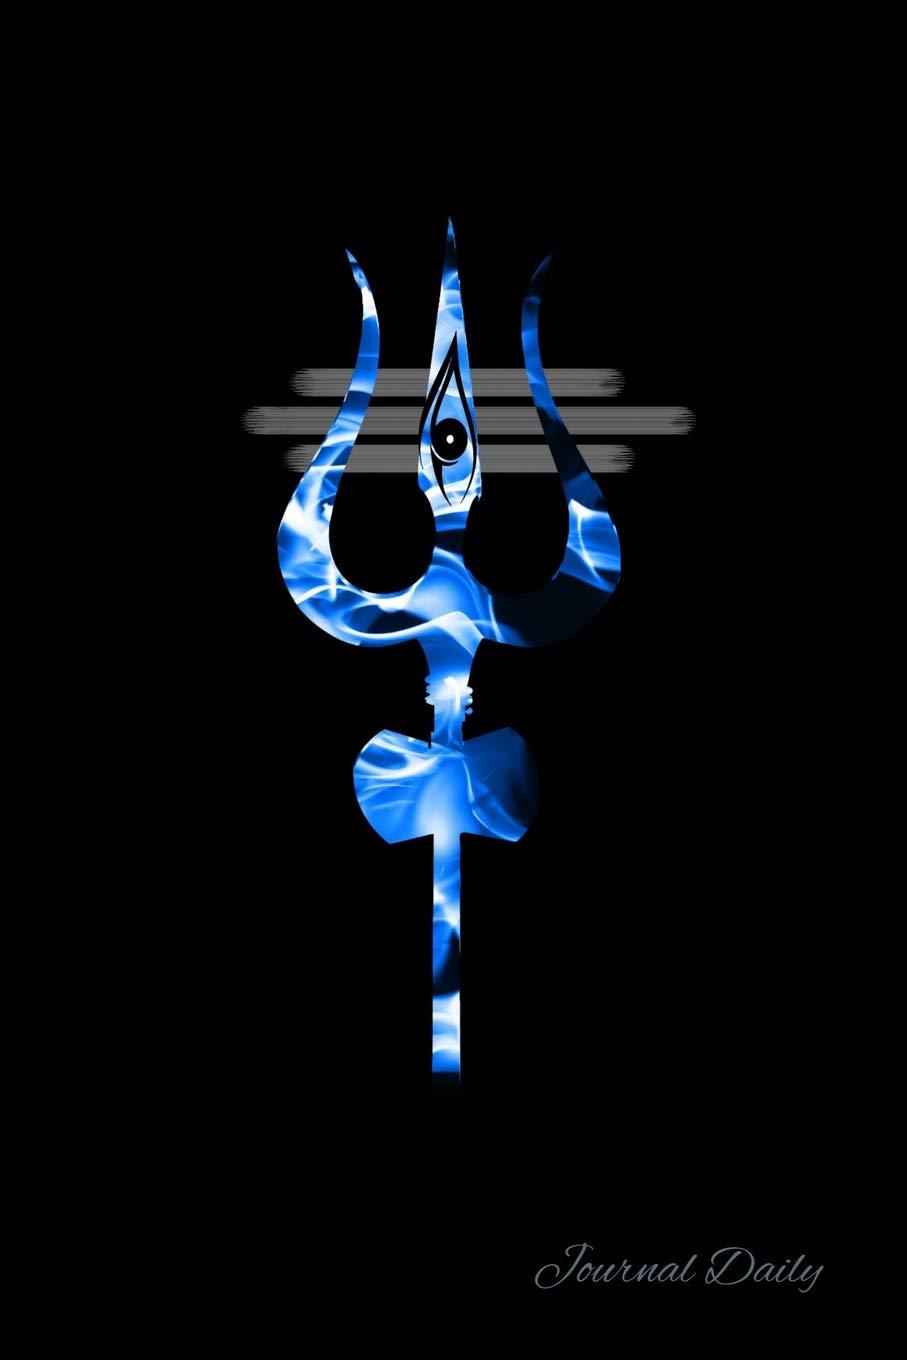 Shiva symbol trident om mantra Buddhism